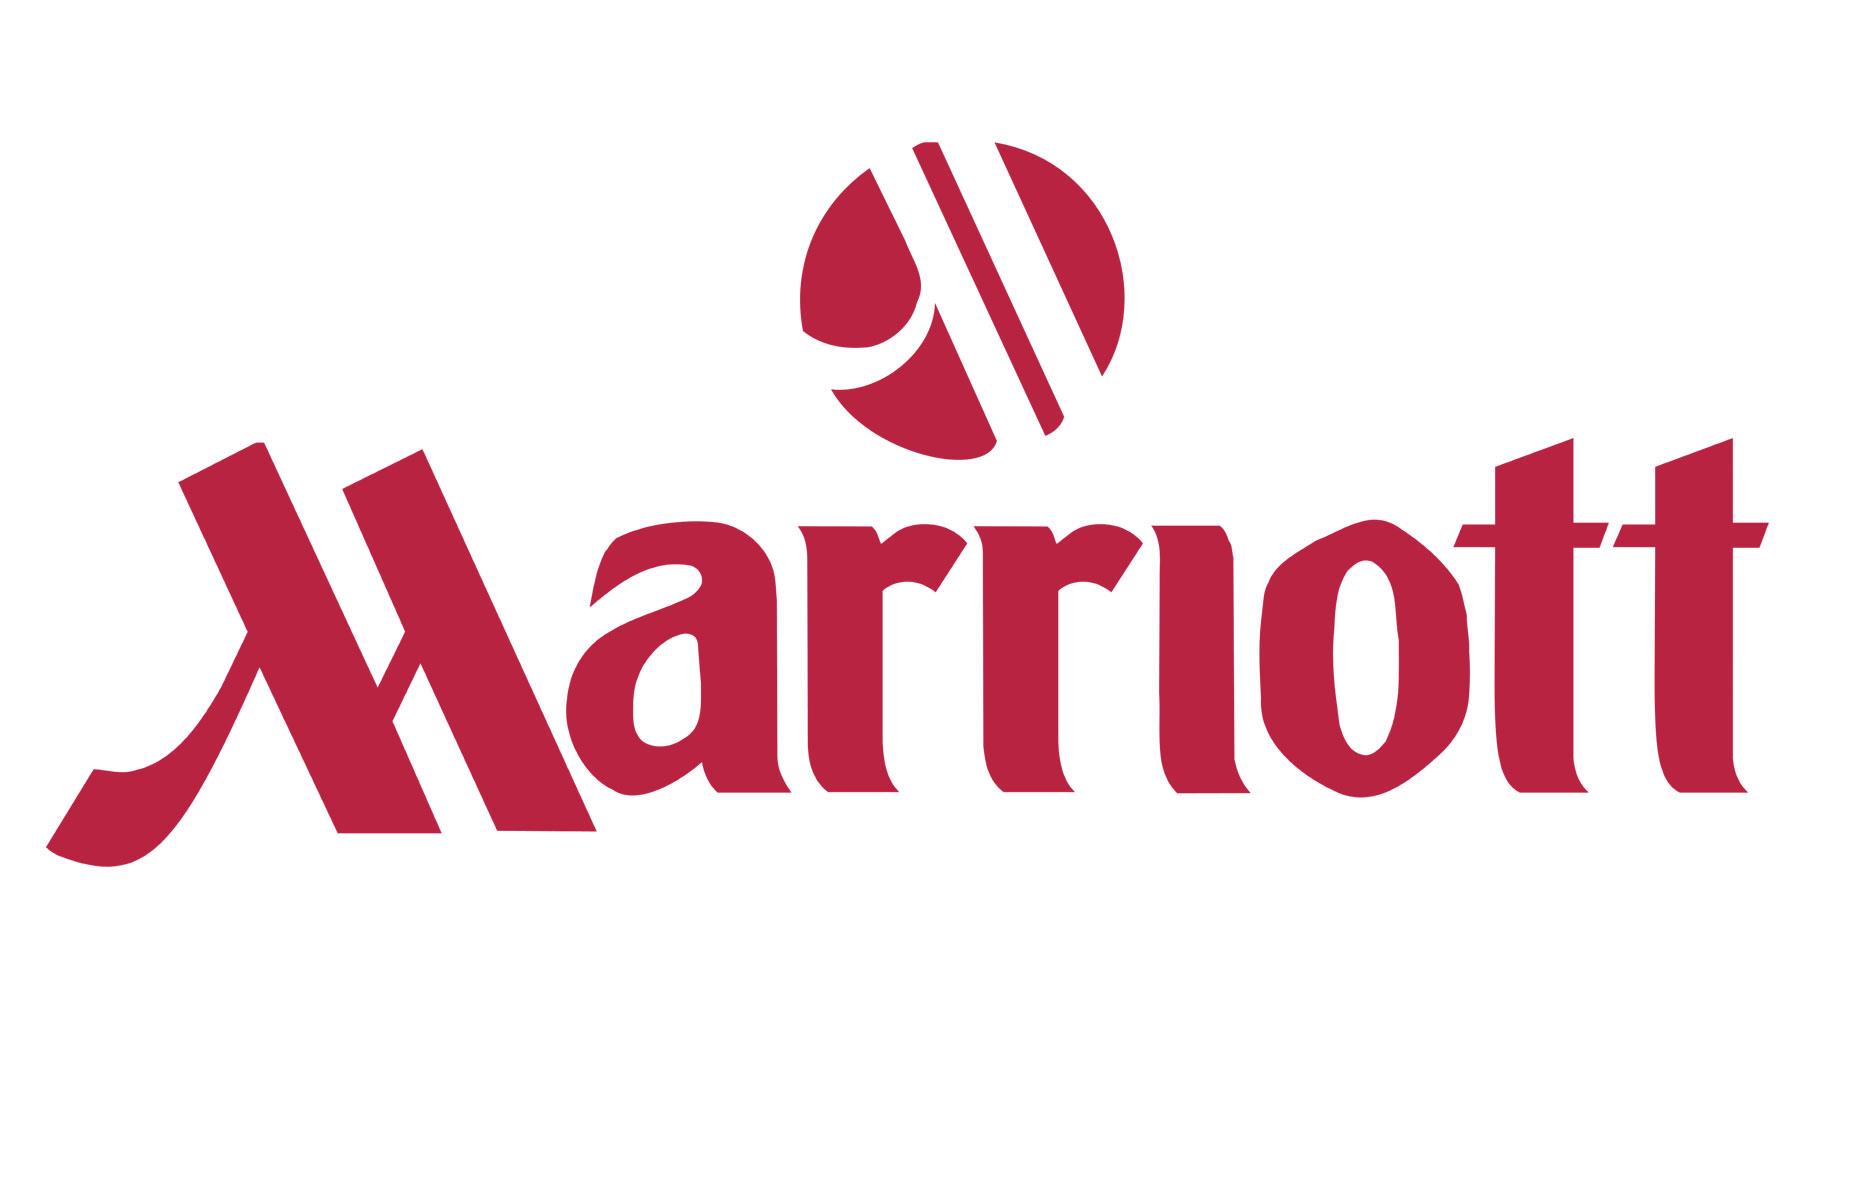 Best: Marriott – before 